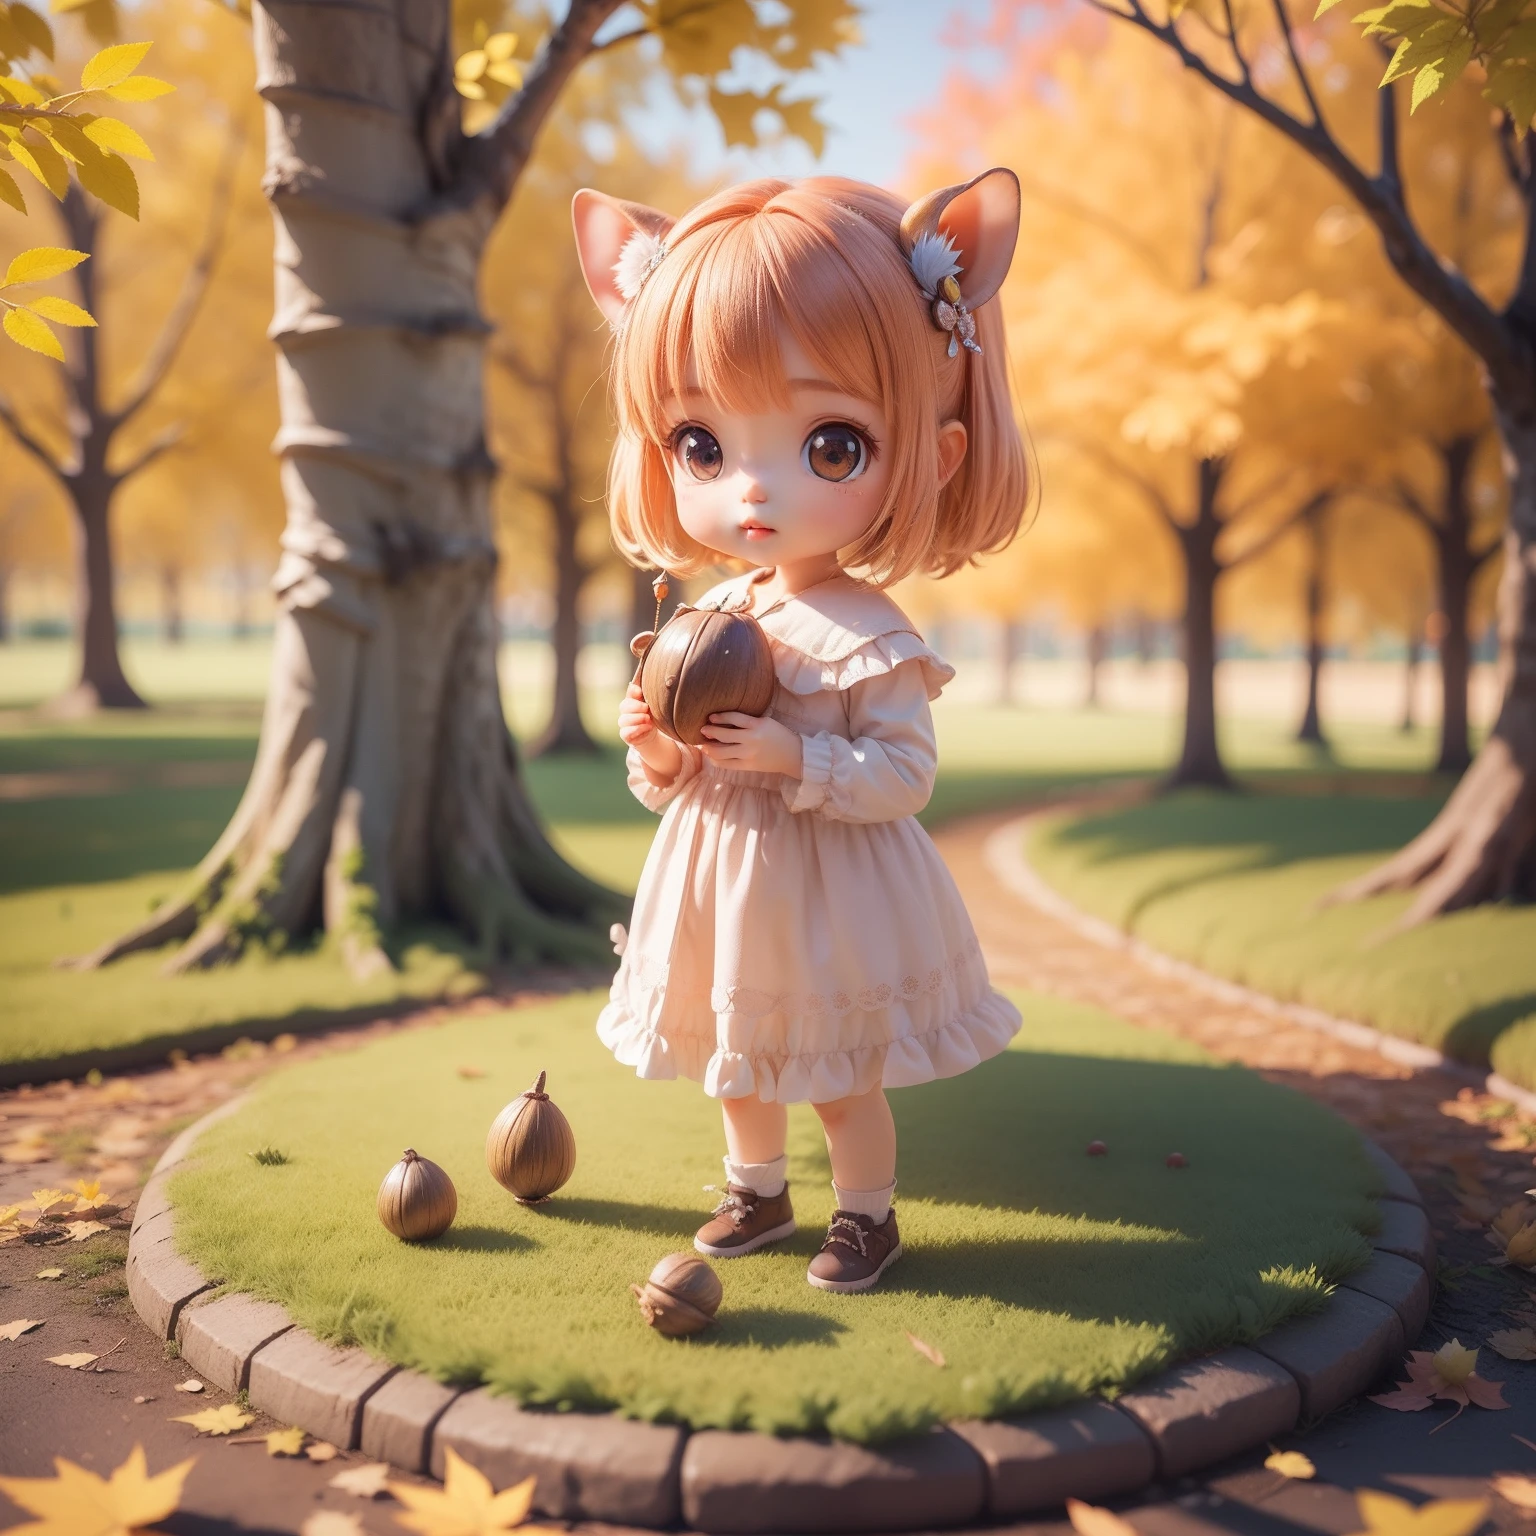 可爱的宝宝 Chibi 动漫,(((赤壁3D))) (最好的质量) (主价格)、（仙女松鼠:1.4)、童话森林里的秋天、双手捧着橡子等待开始